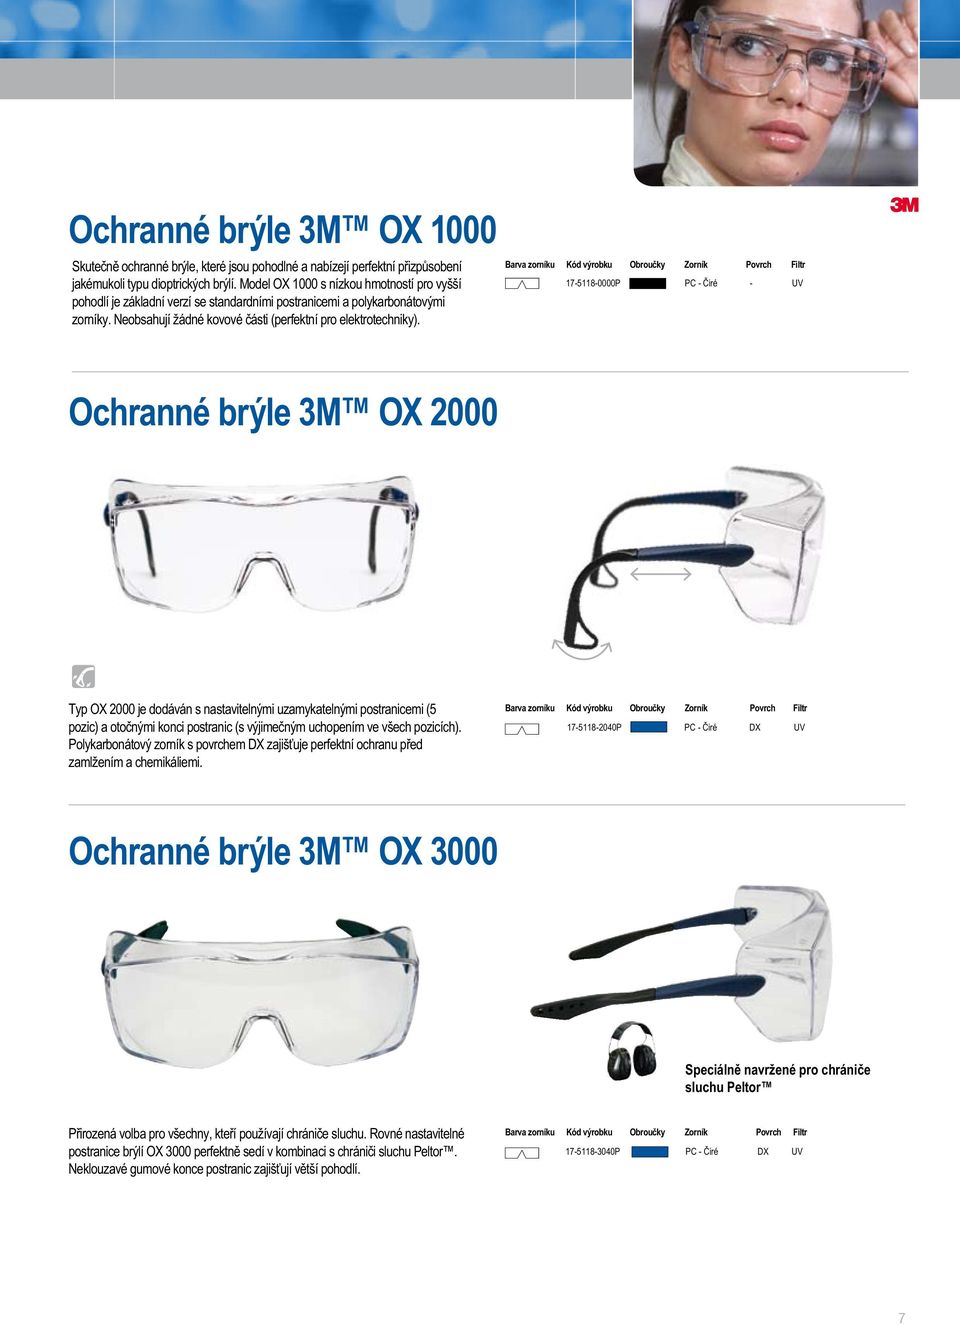 17-5118-0000P - Ochranné brýle 3M O 2000 Pohodlné Typ O 2000 je dodáván s nastavitelnými uzamykatelnými postranicemi (5 pozic) a otočnými konci postranic (s výjimečným uchopením ve všech pozicích).